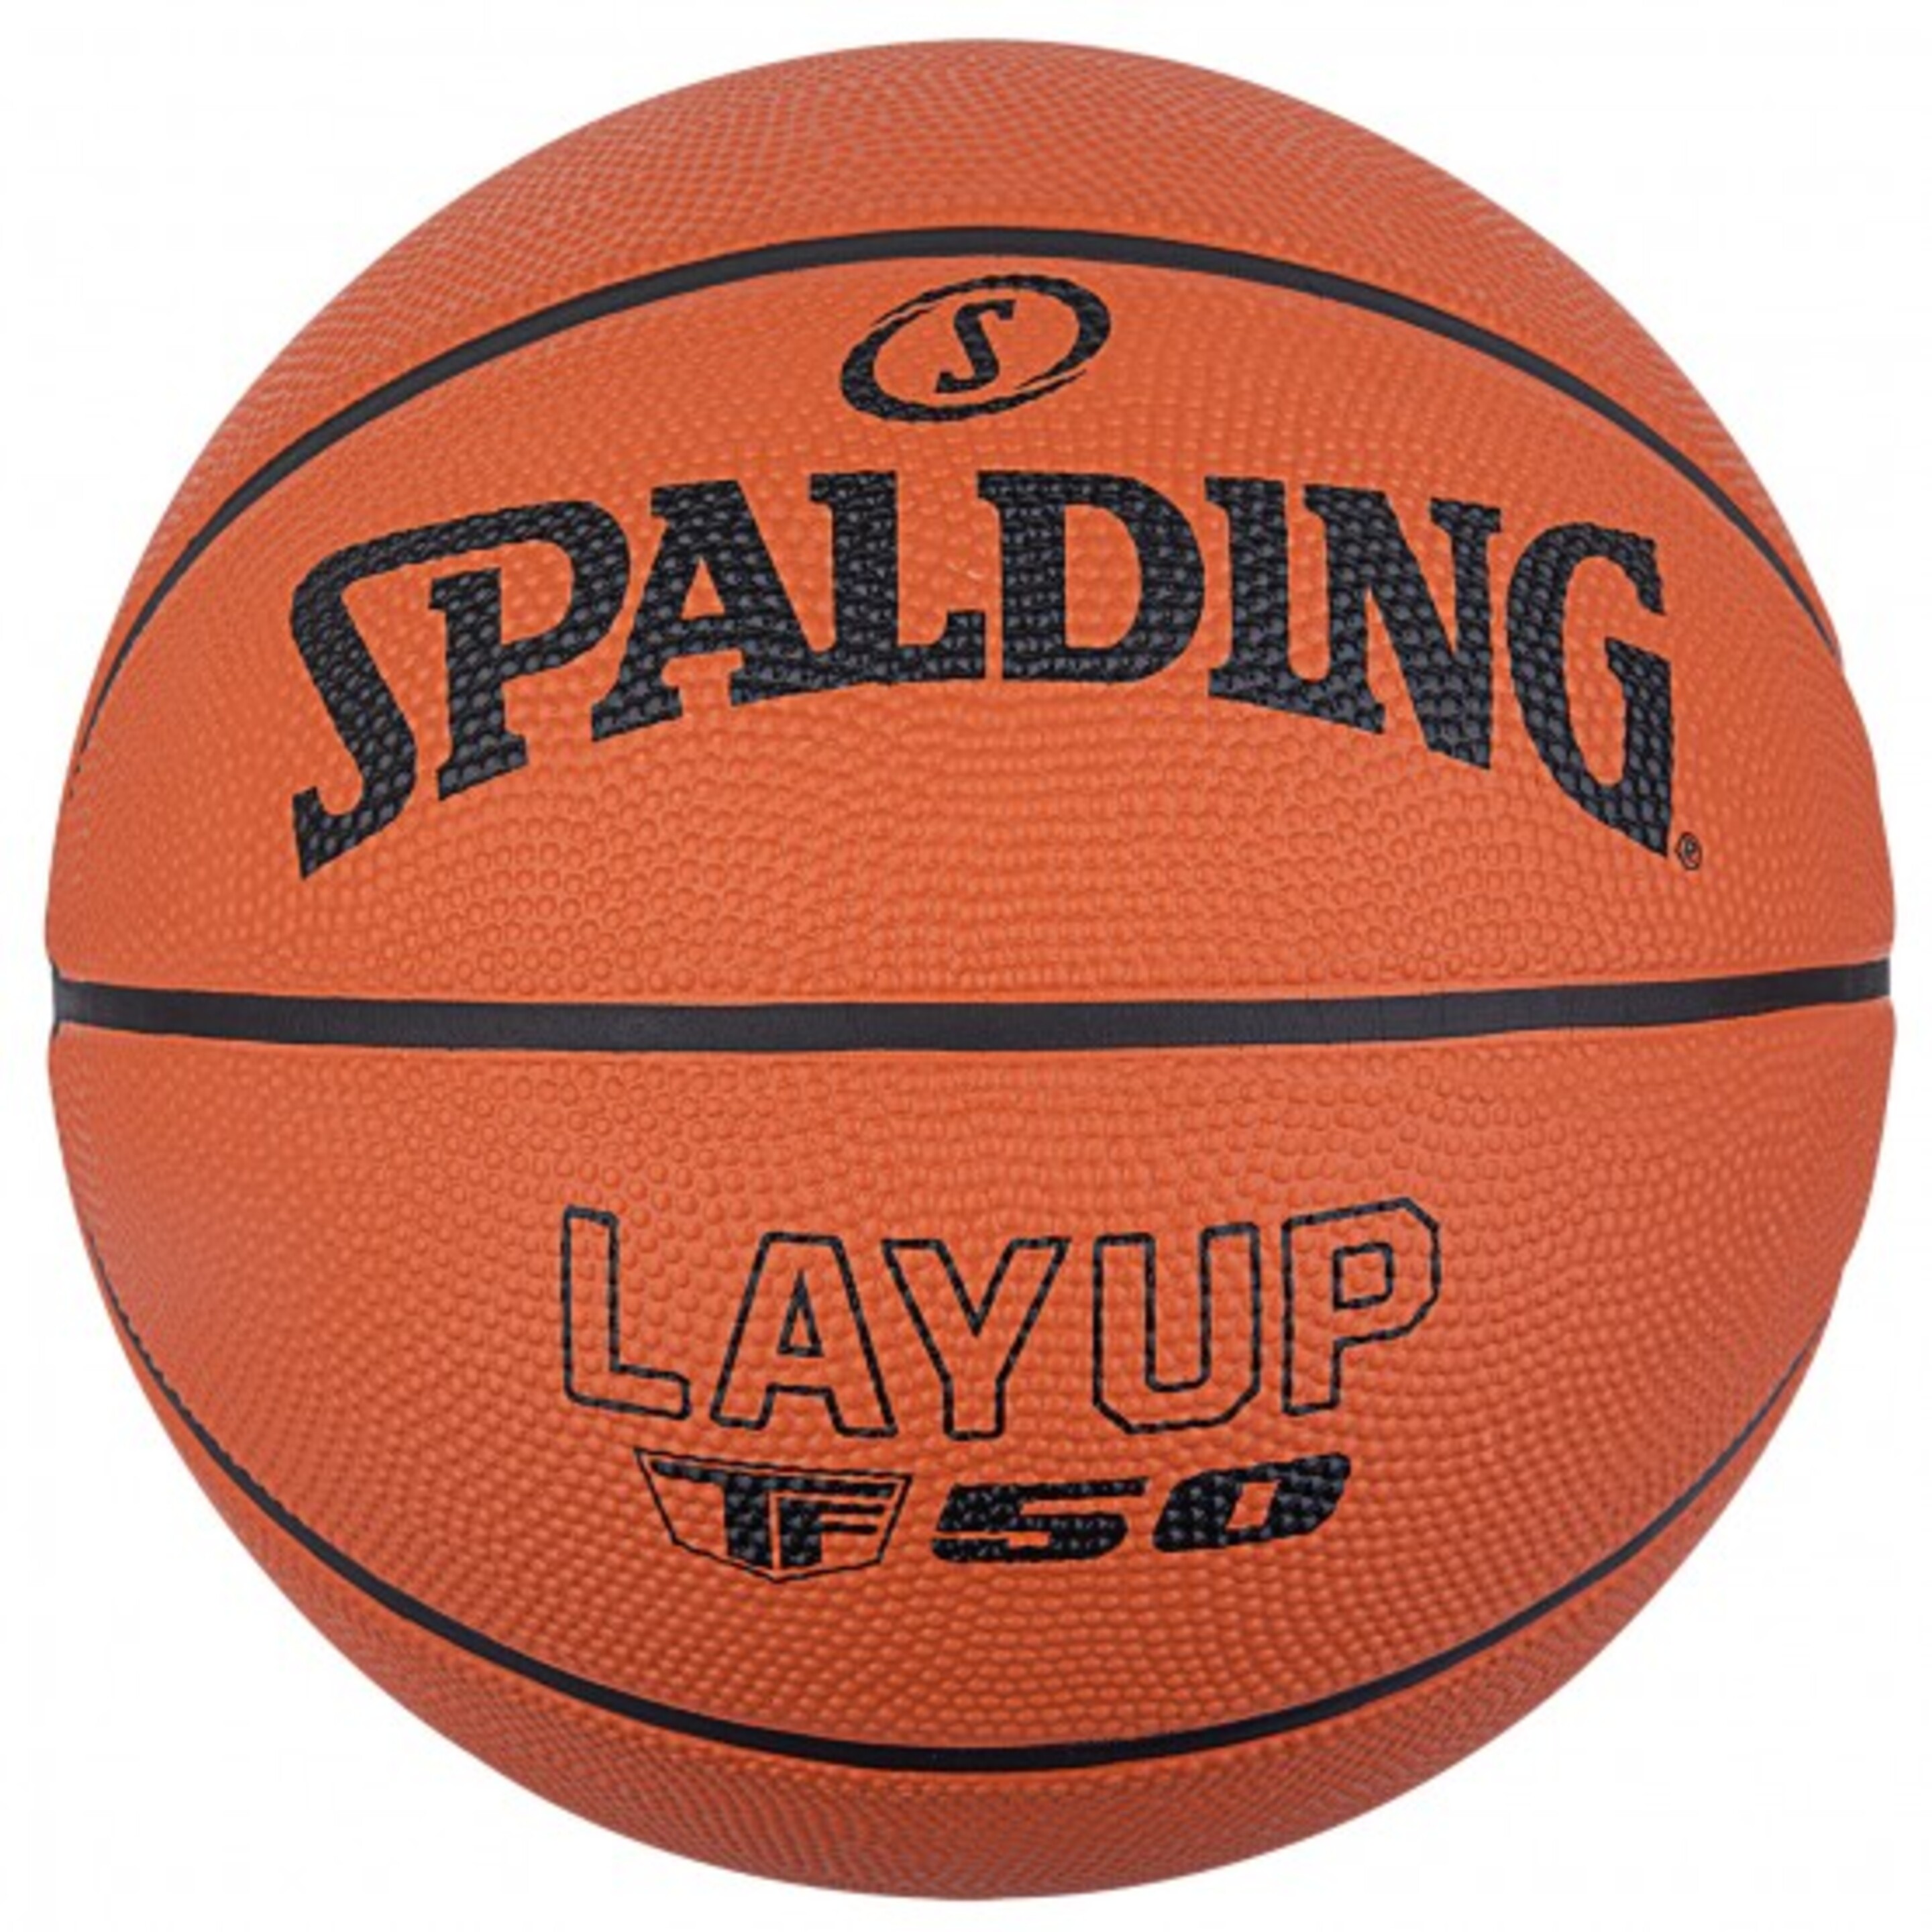 Spalding Layup Basketball Tf-50 Sz5.rubber - naranja - 